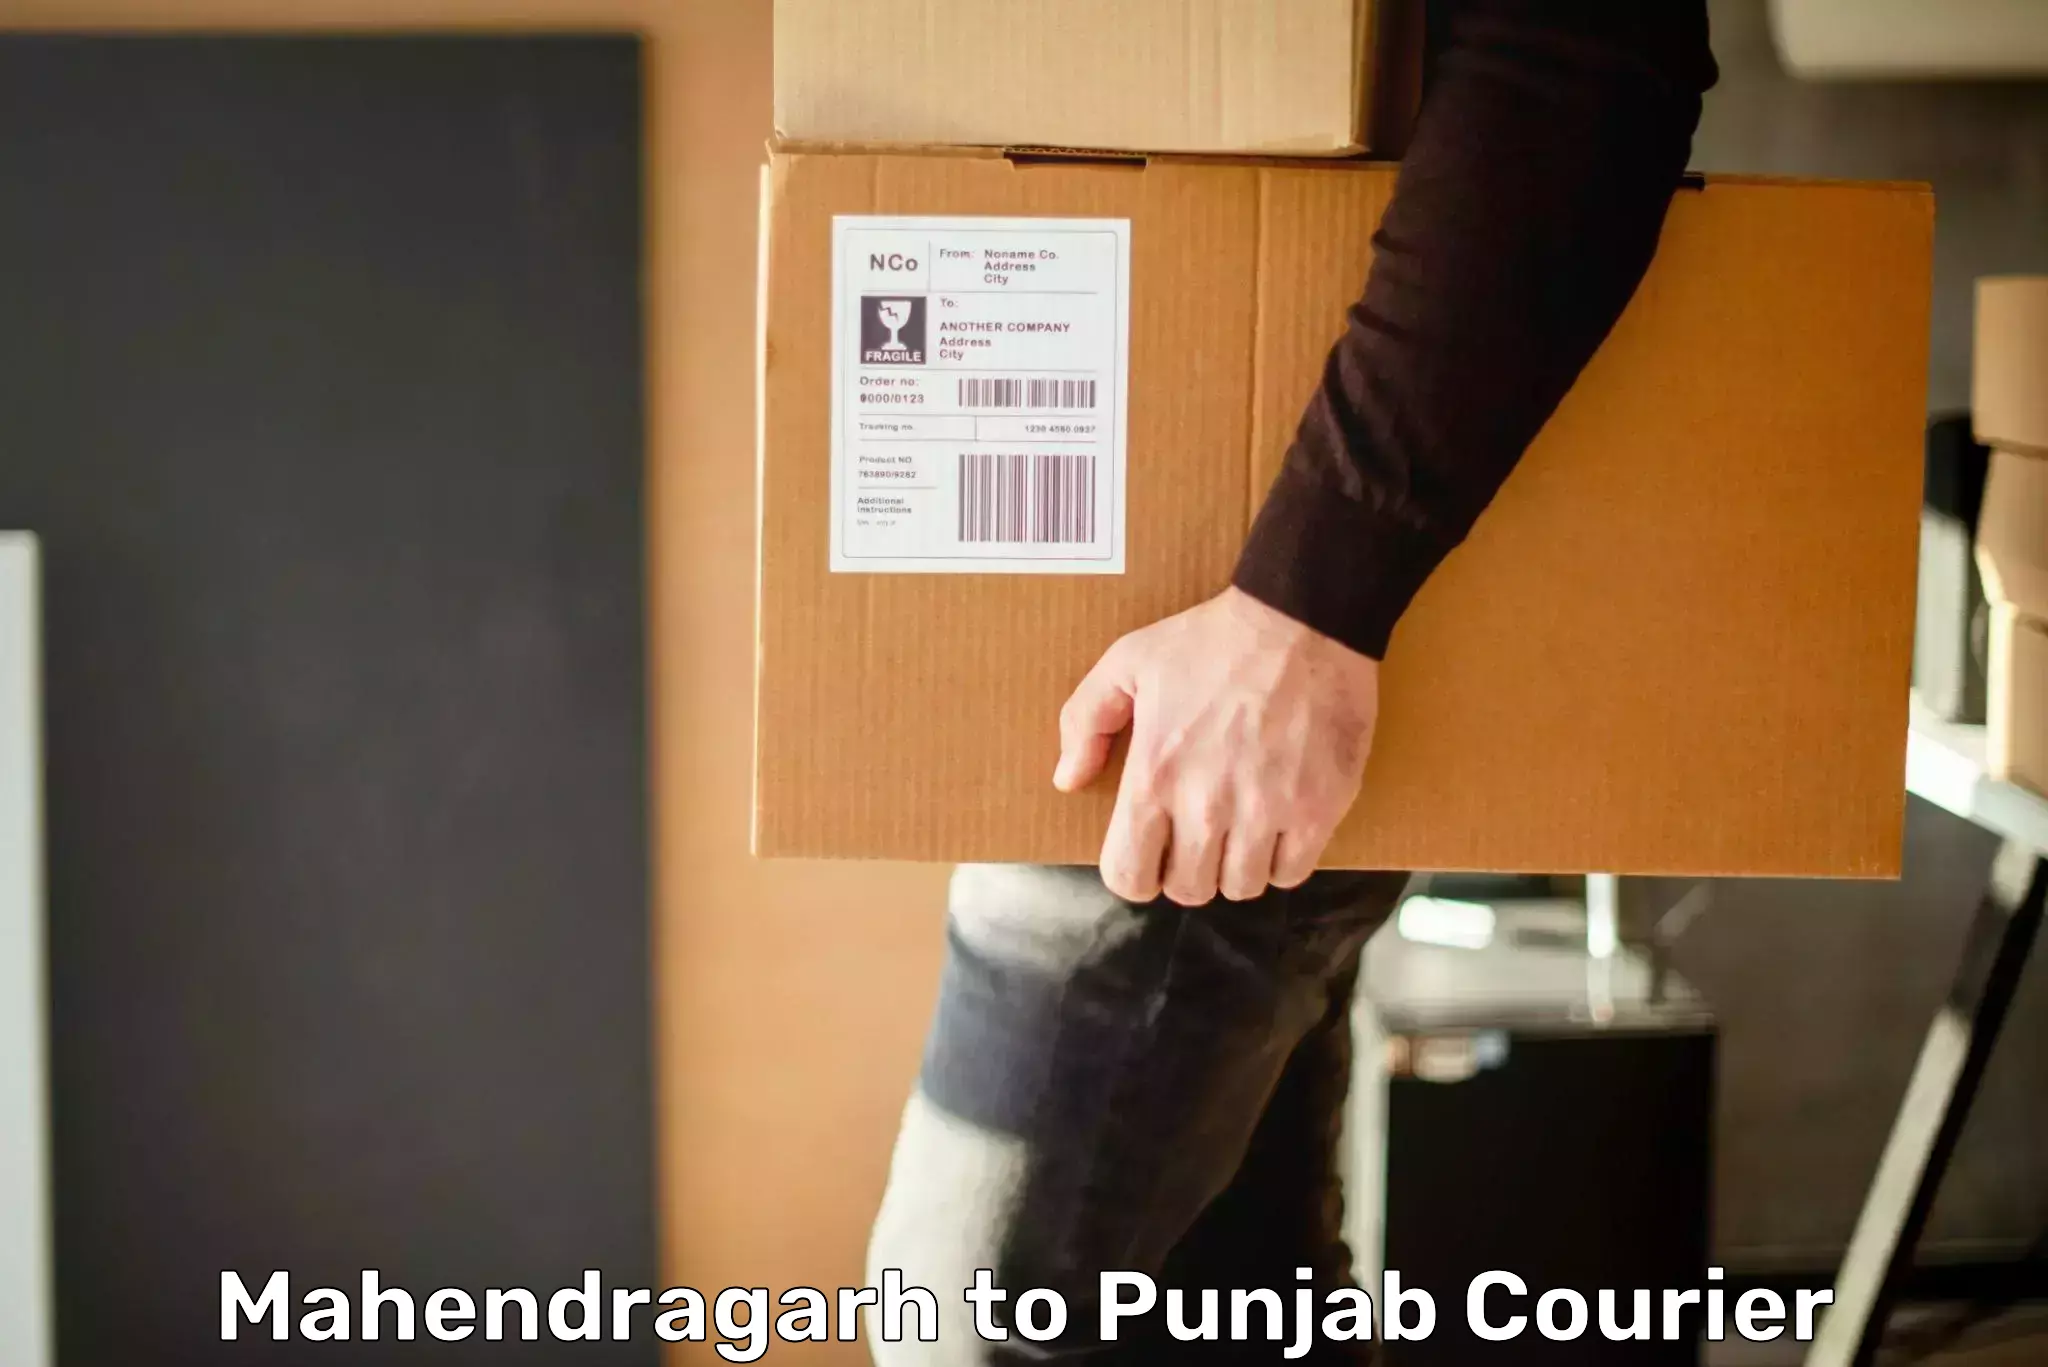 Digital shipping tools Mahendragarh to Guru Nanak Dev University Amritsar